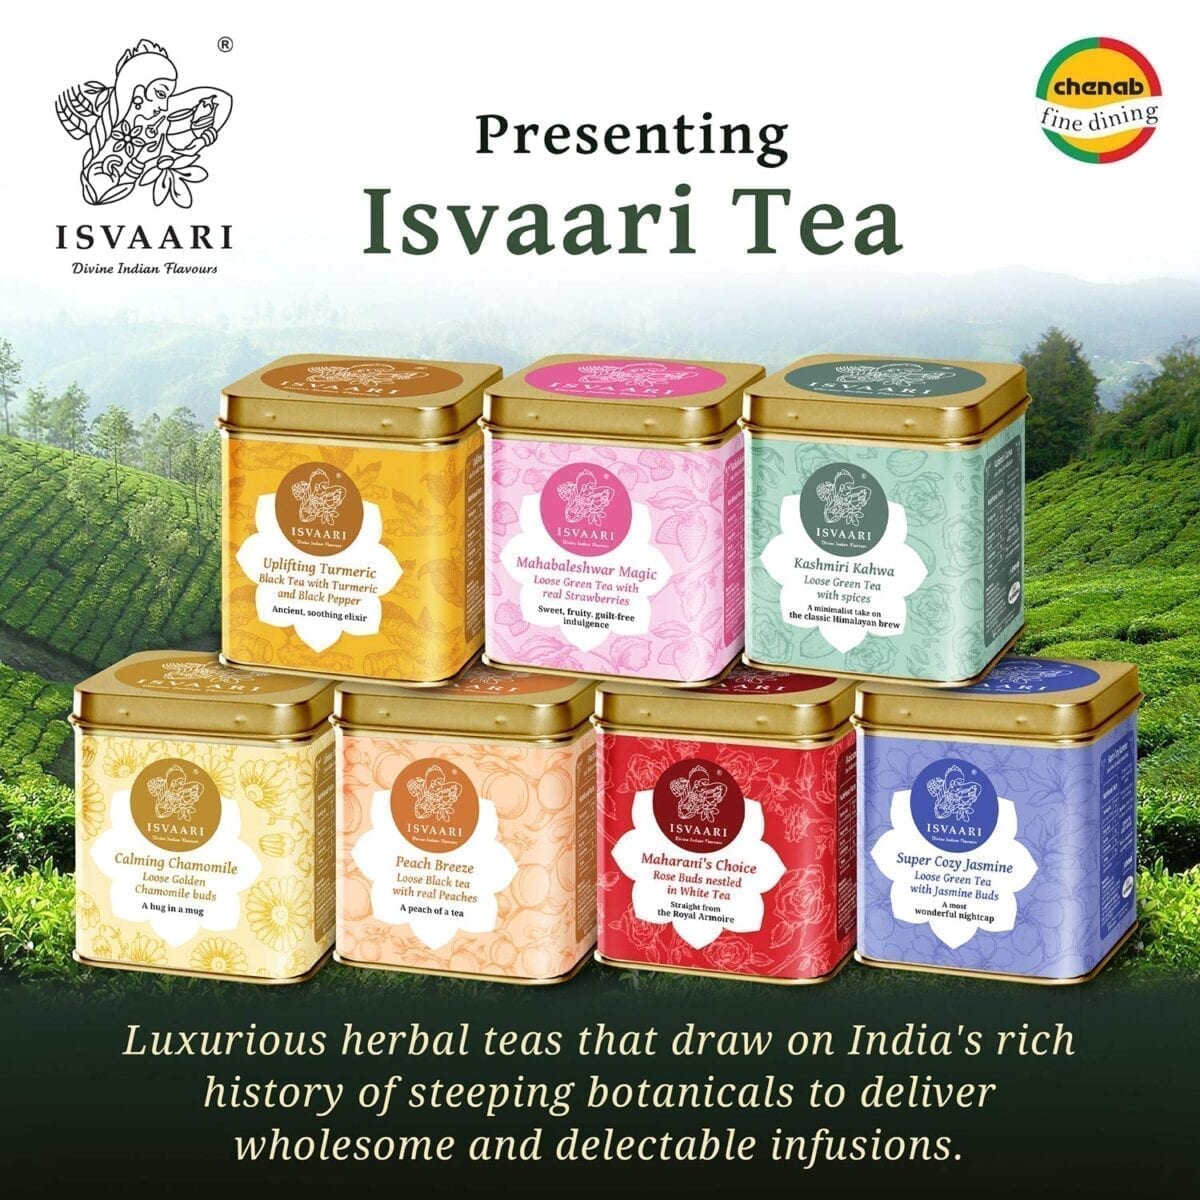 isvaari-flavoured-tea-rose-buds-white-delight-tea-50g